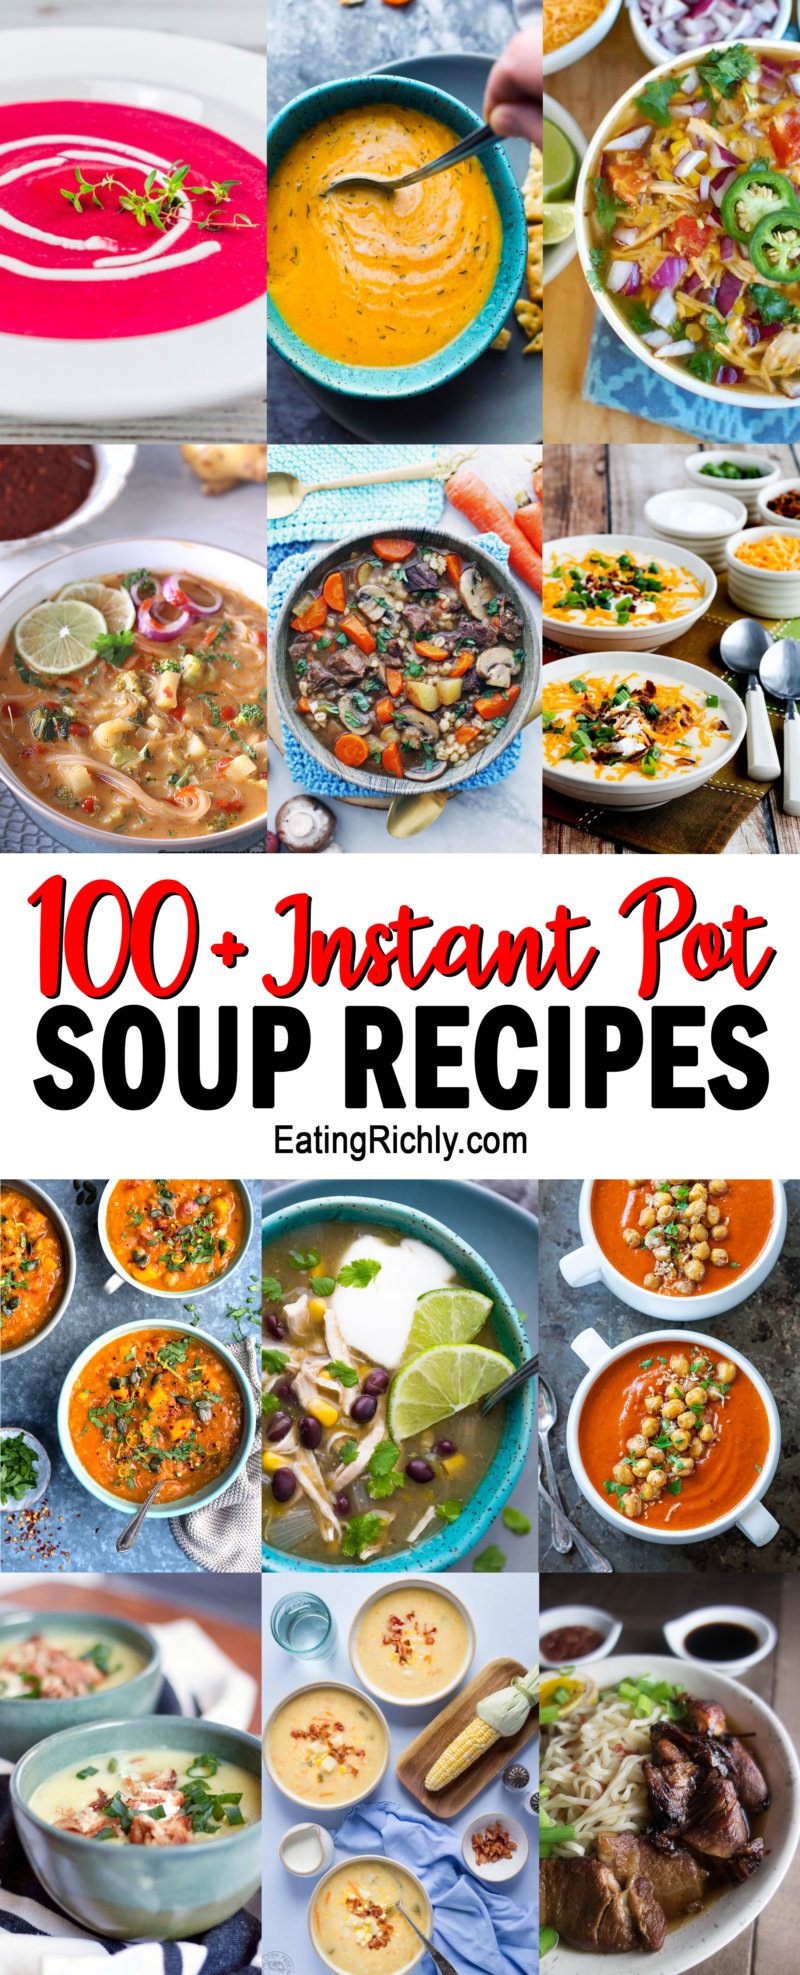 100+ Instant Pot Soup Recipes